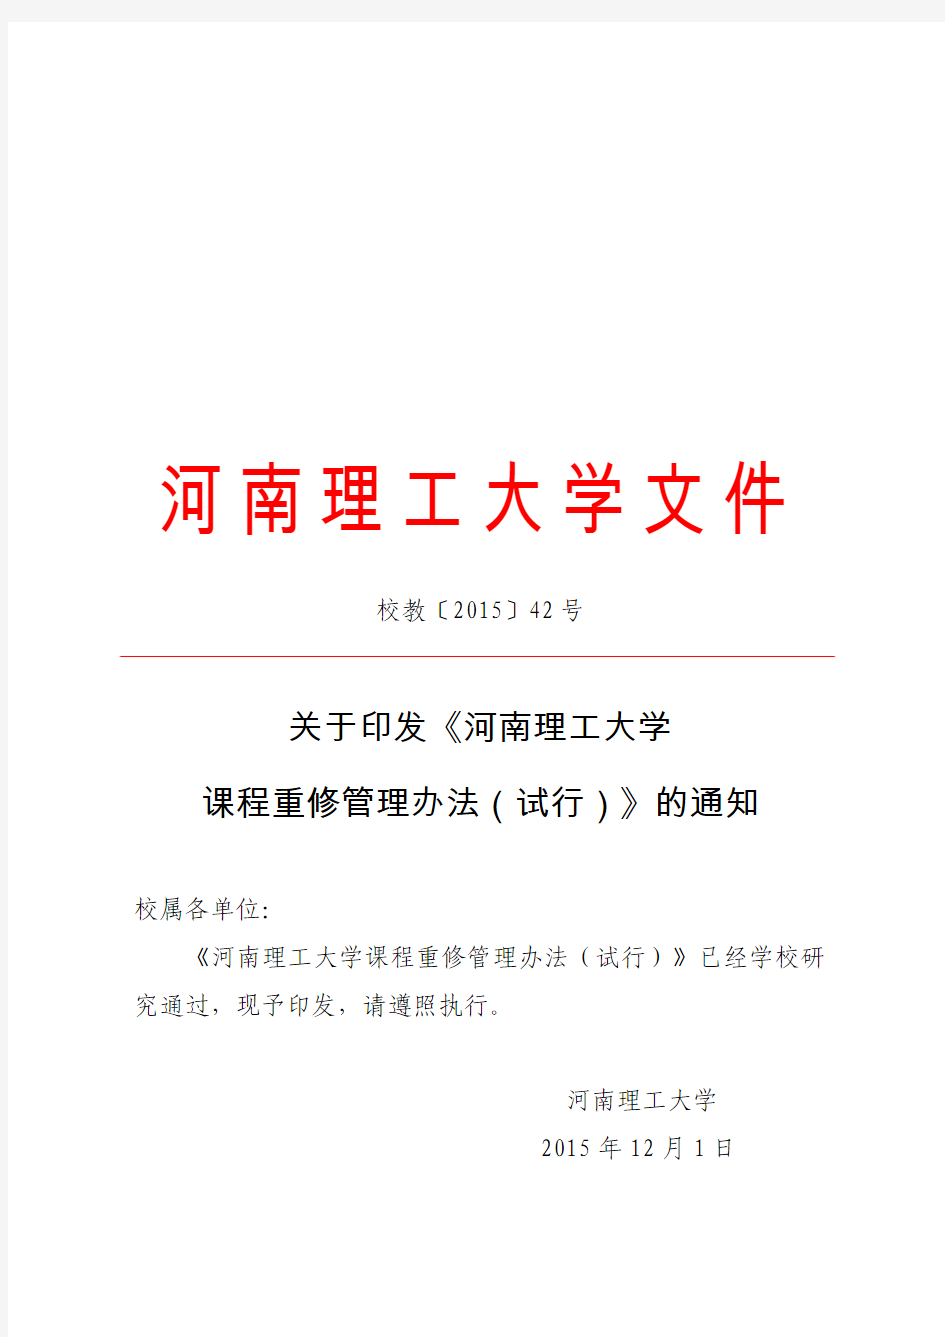 校教[2015]42号河南理工大学课程重修管理办法(暂行)